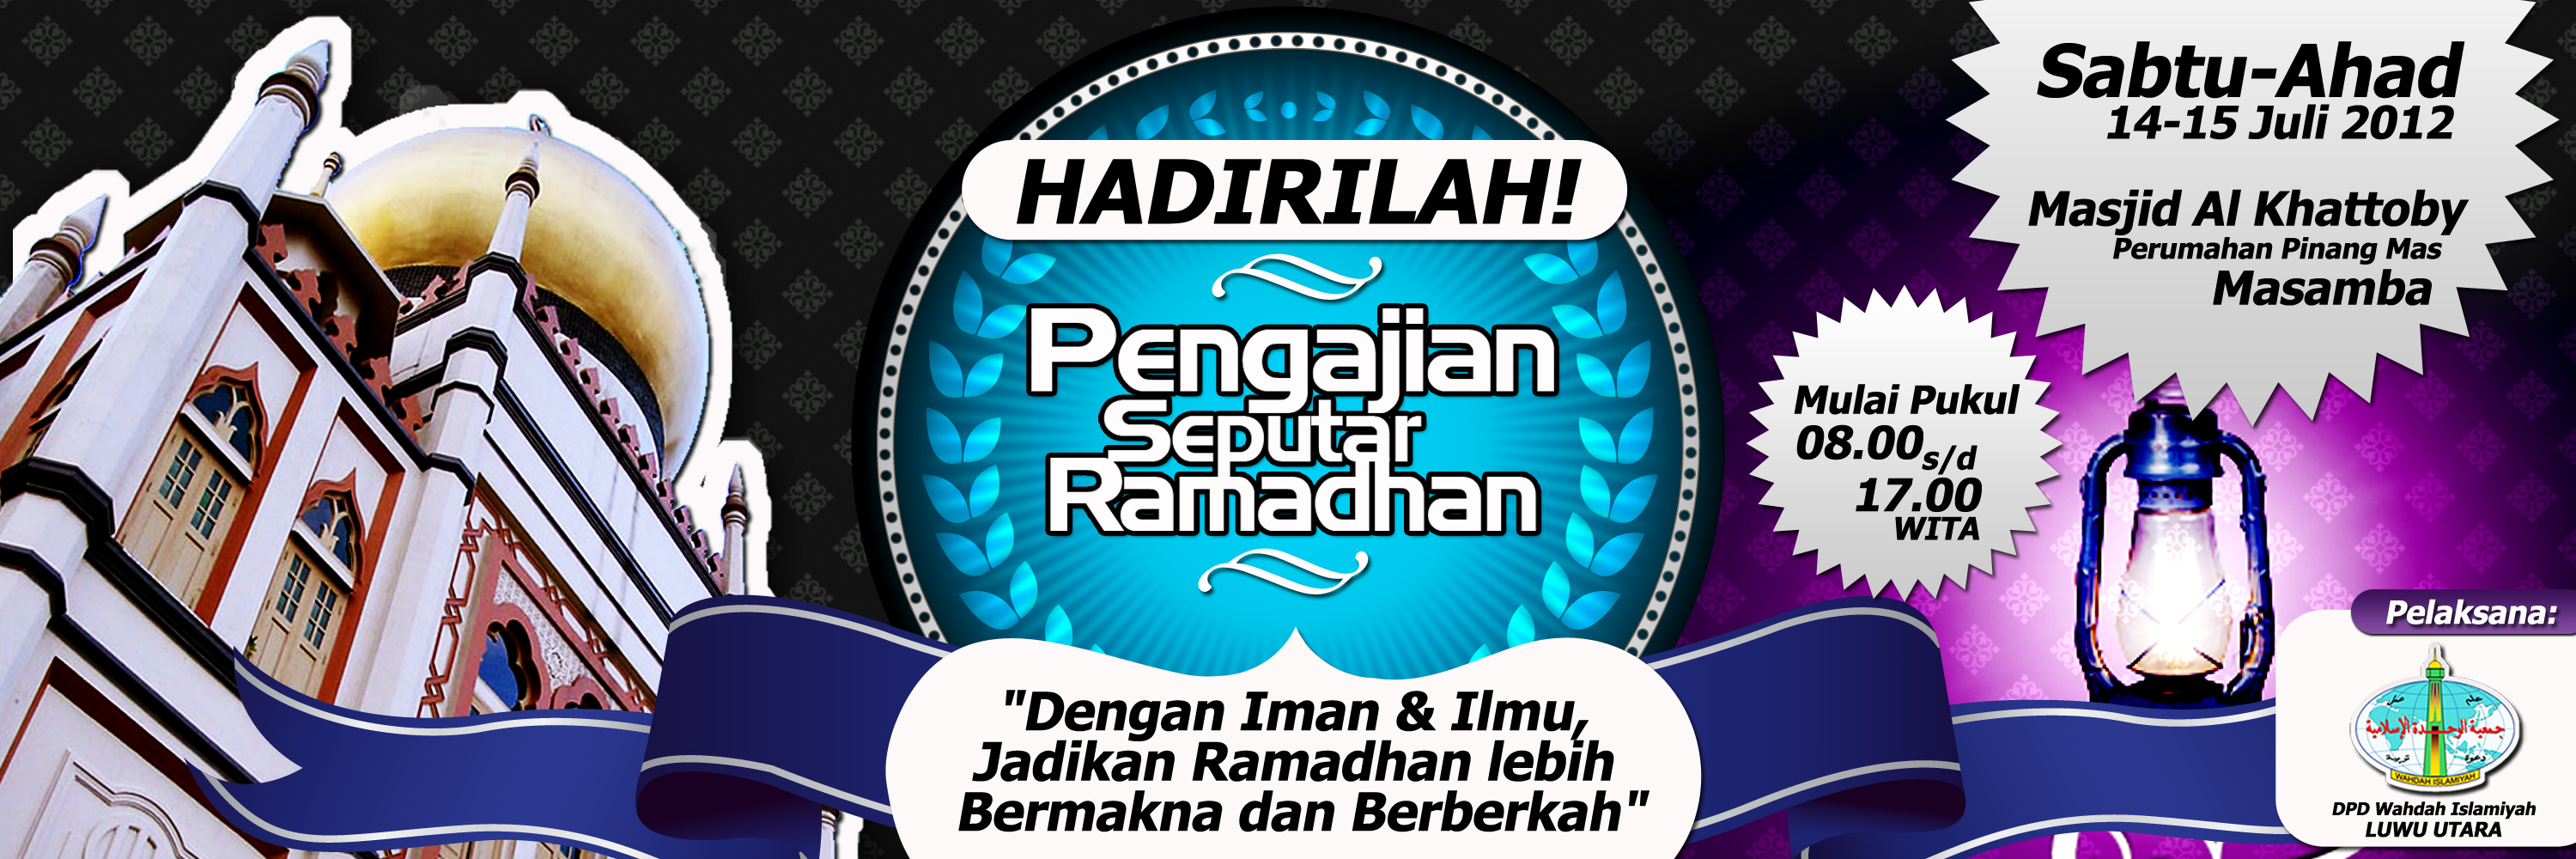 Contoh Banner Ramadhan Cdr - Contoh Si